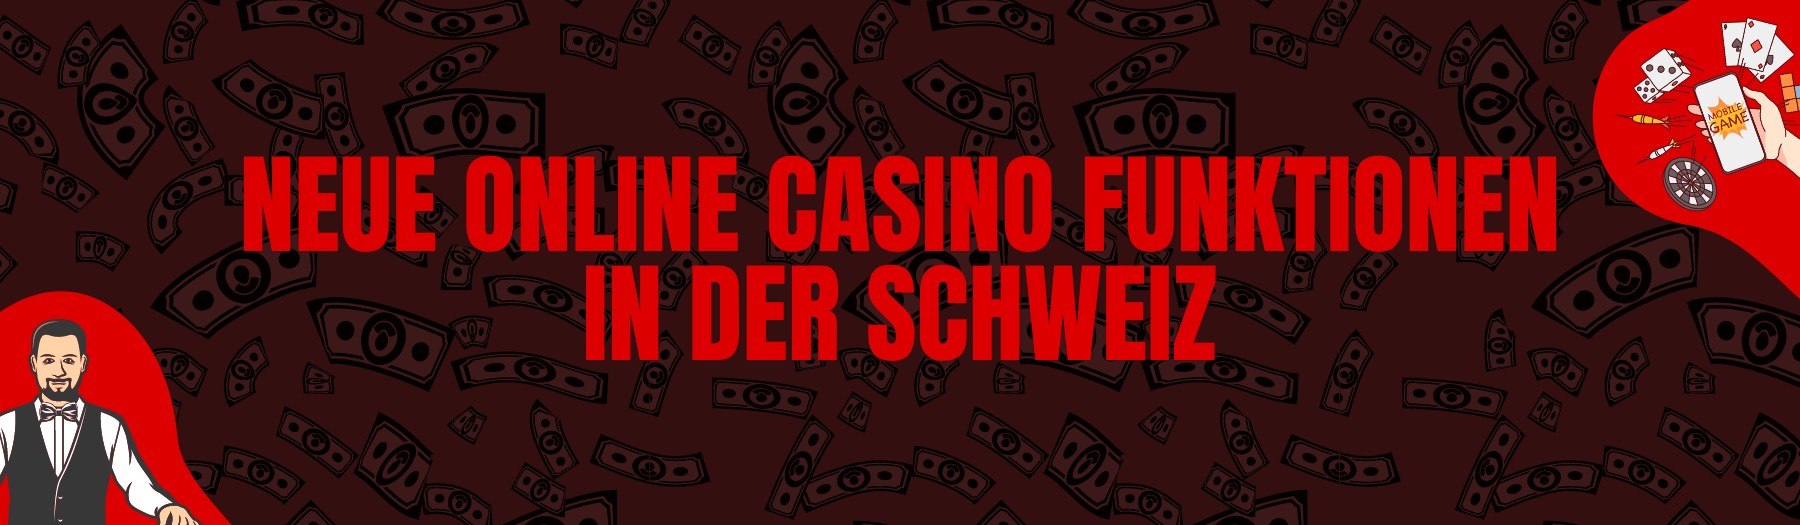 Neue Online Casino Funktionen in der Schweiz